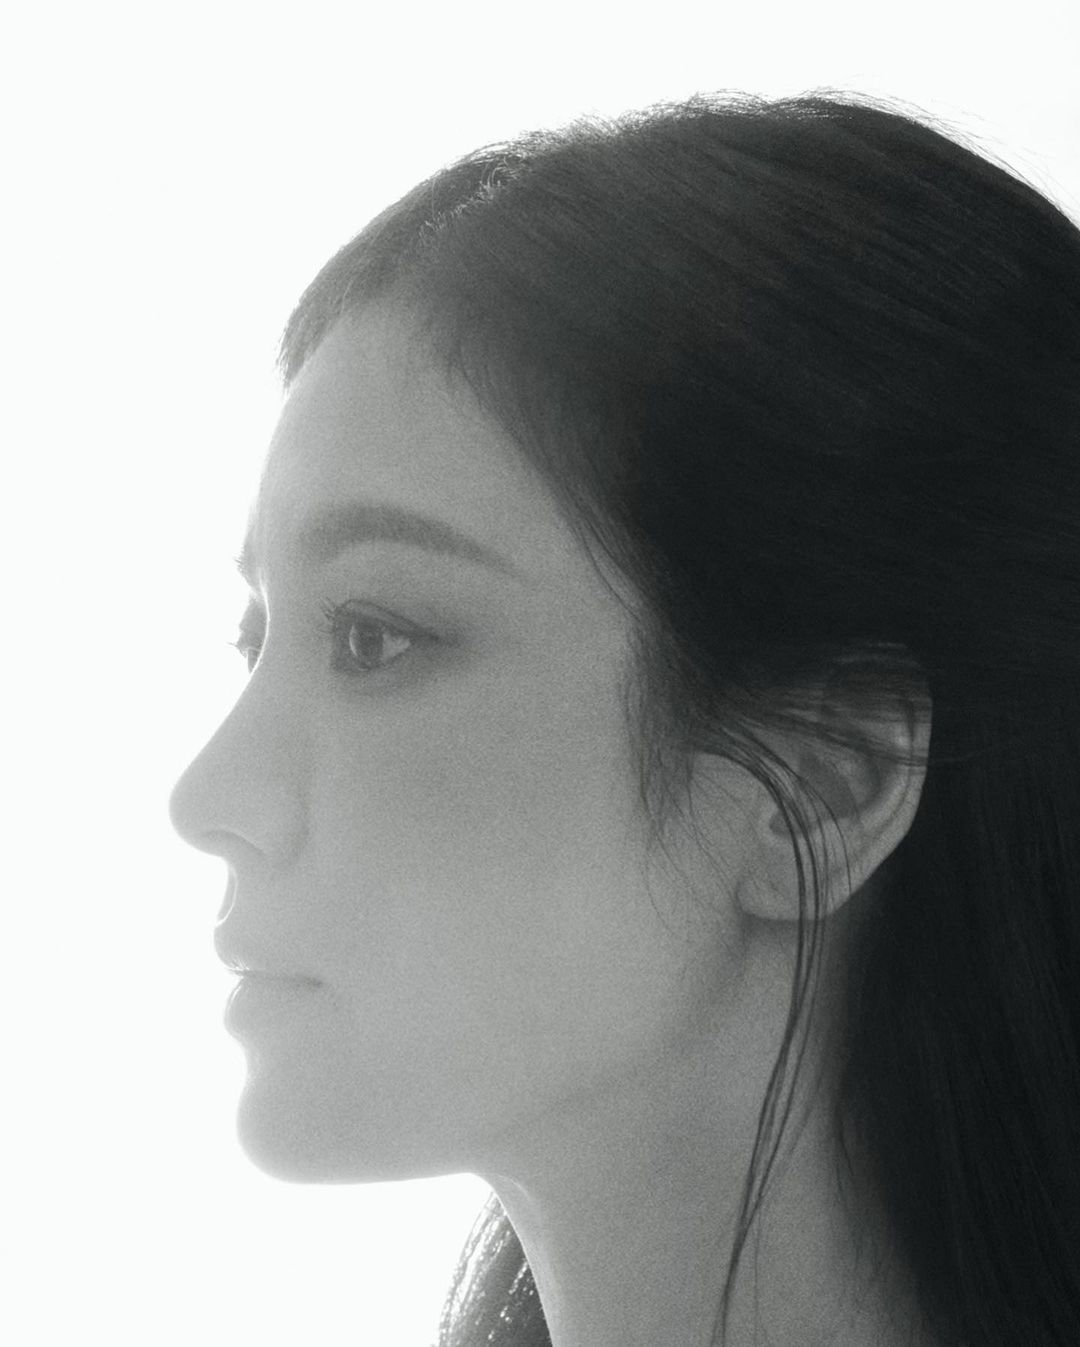 Cuối cùng Song Hye Kyo cũng biết mình sở hữu góc nghiêng tuyệt phẩm đến thế nào  - Ảnh 2.